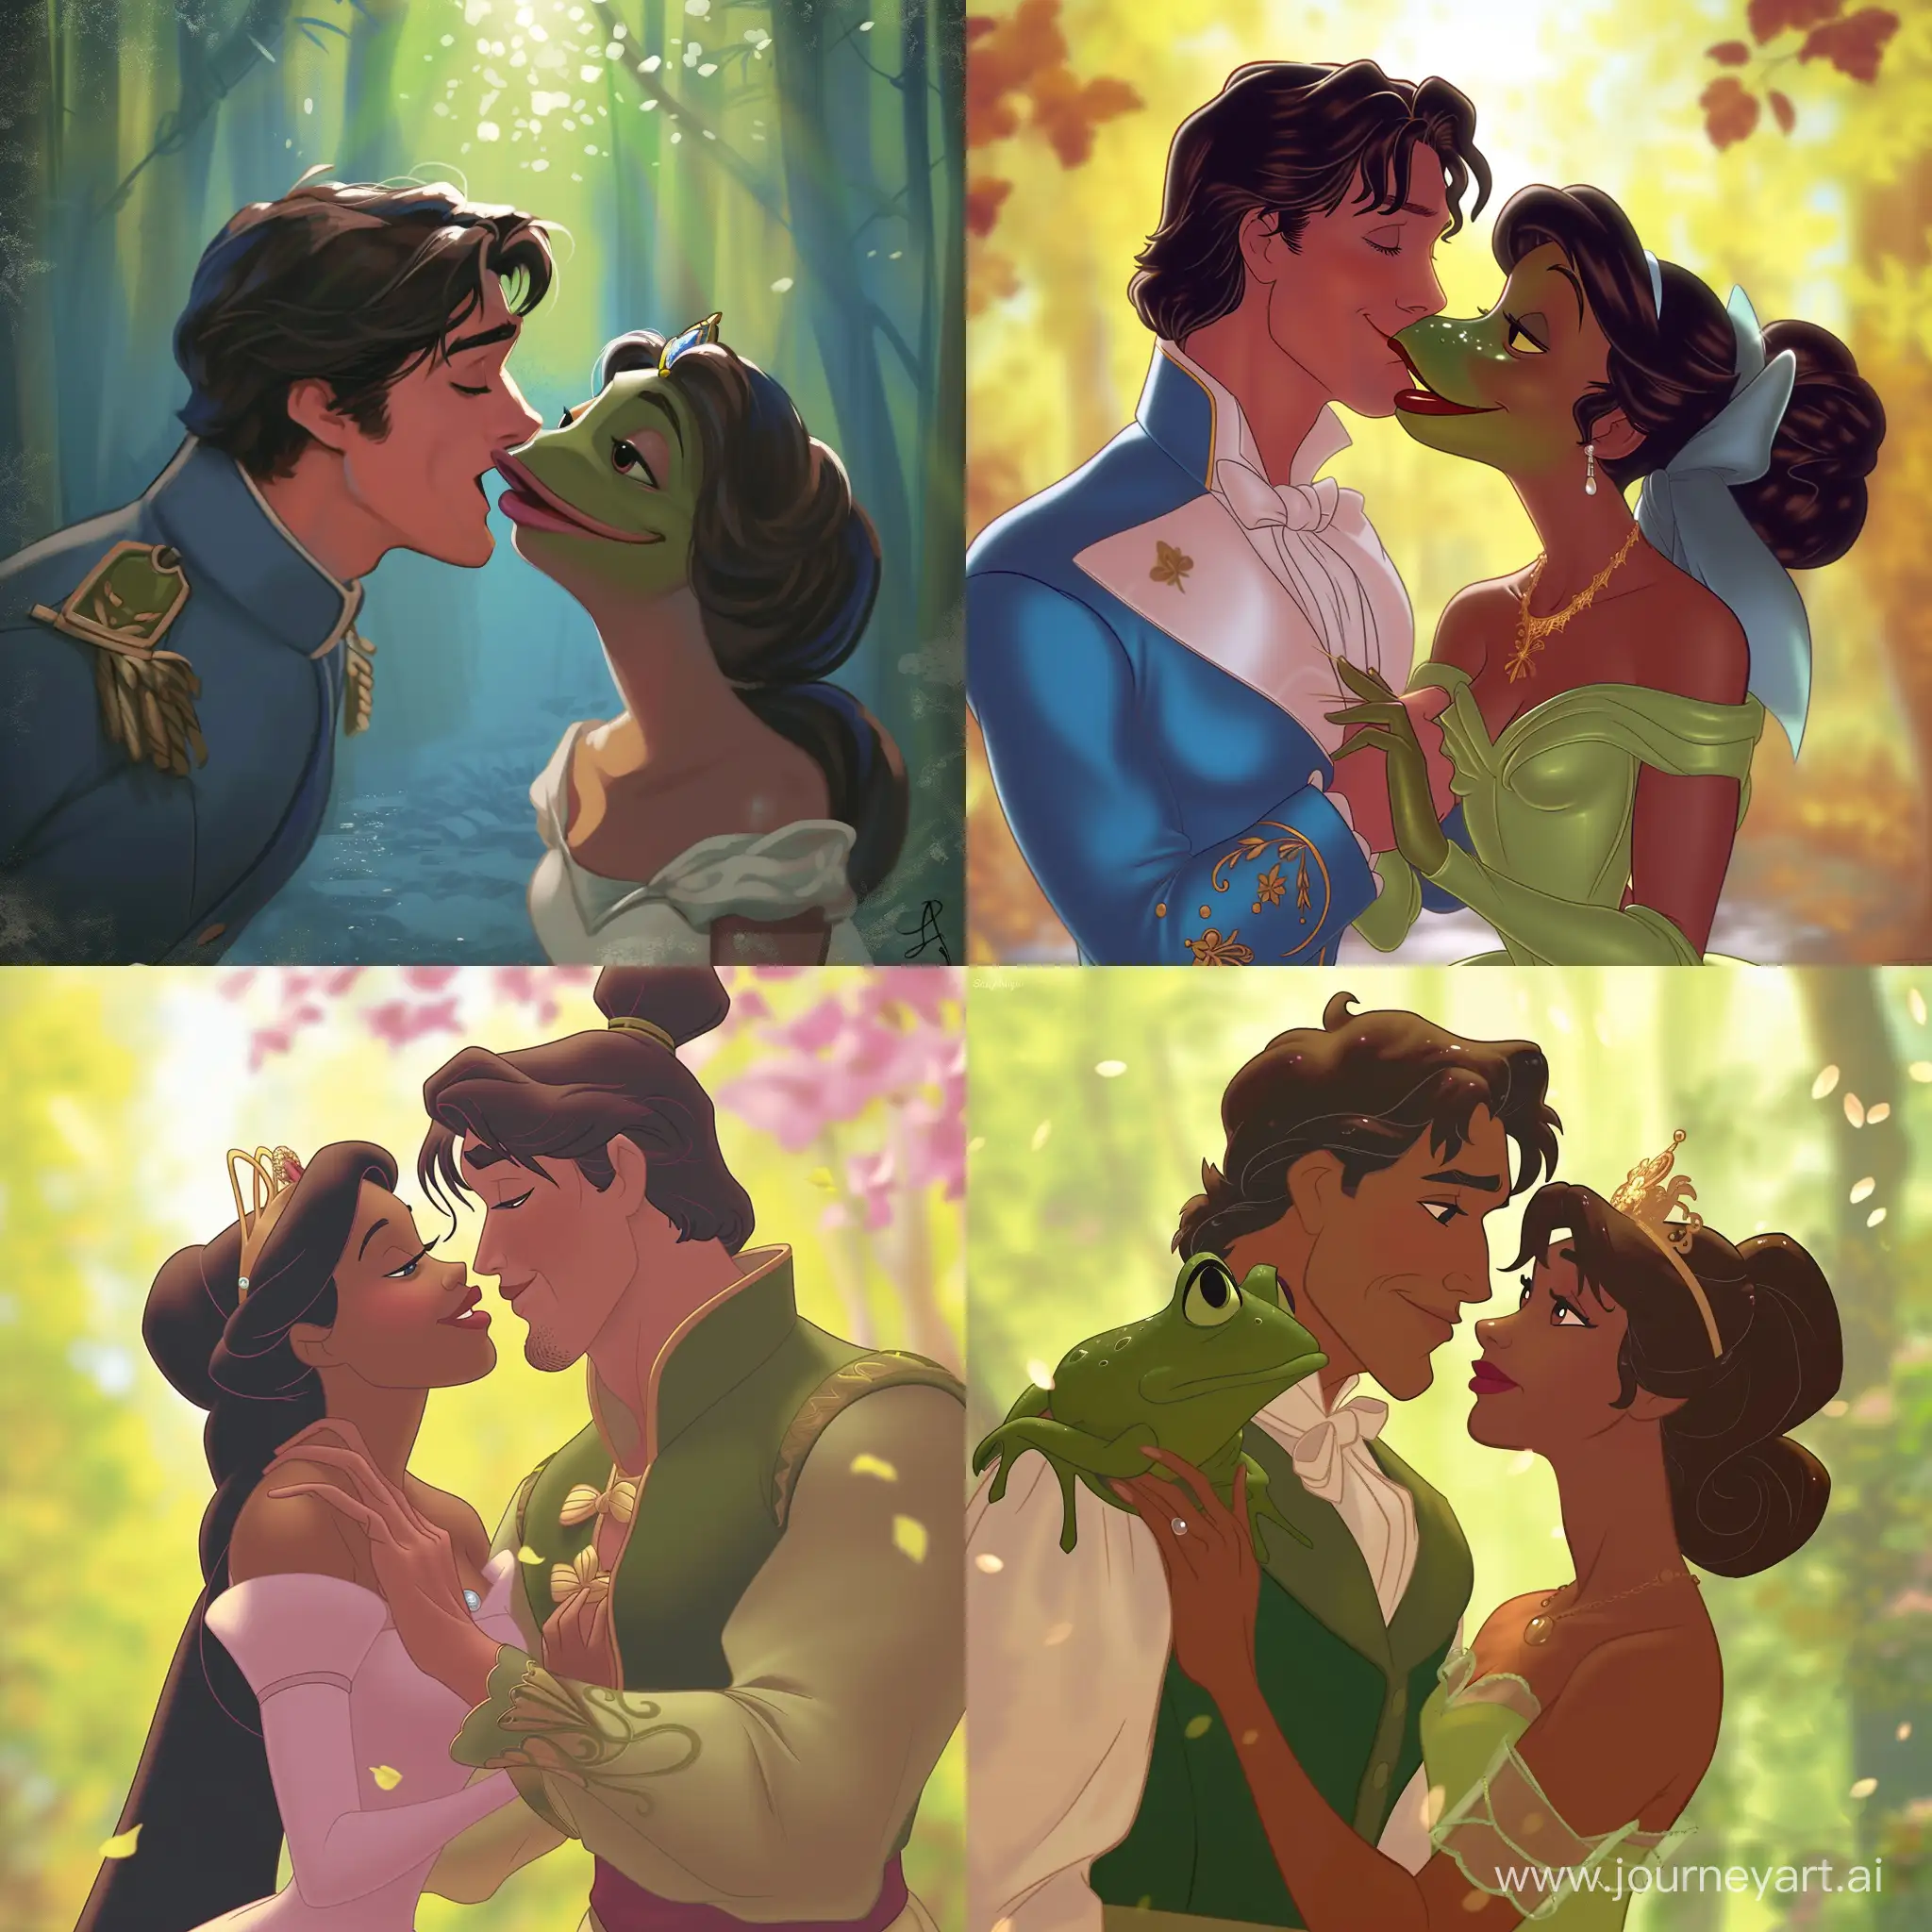 Enchanting-Moment-Prince-and-Princess-Frog-Share-a-Romantic-Kiss